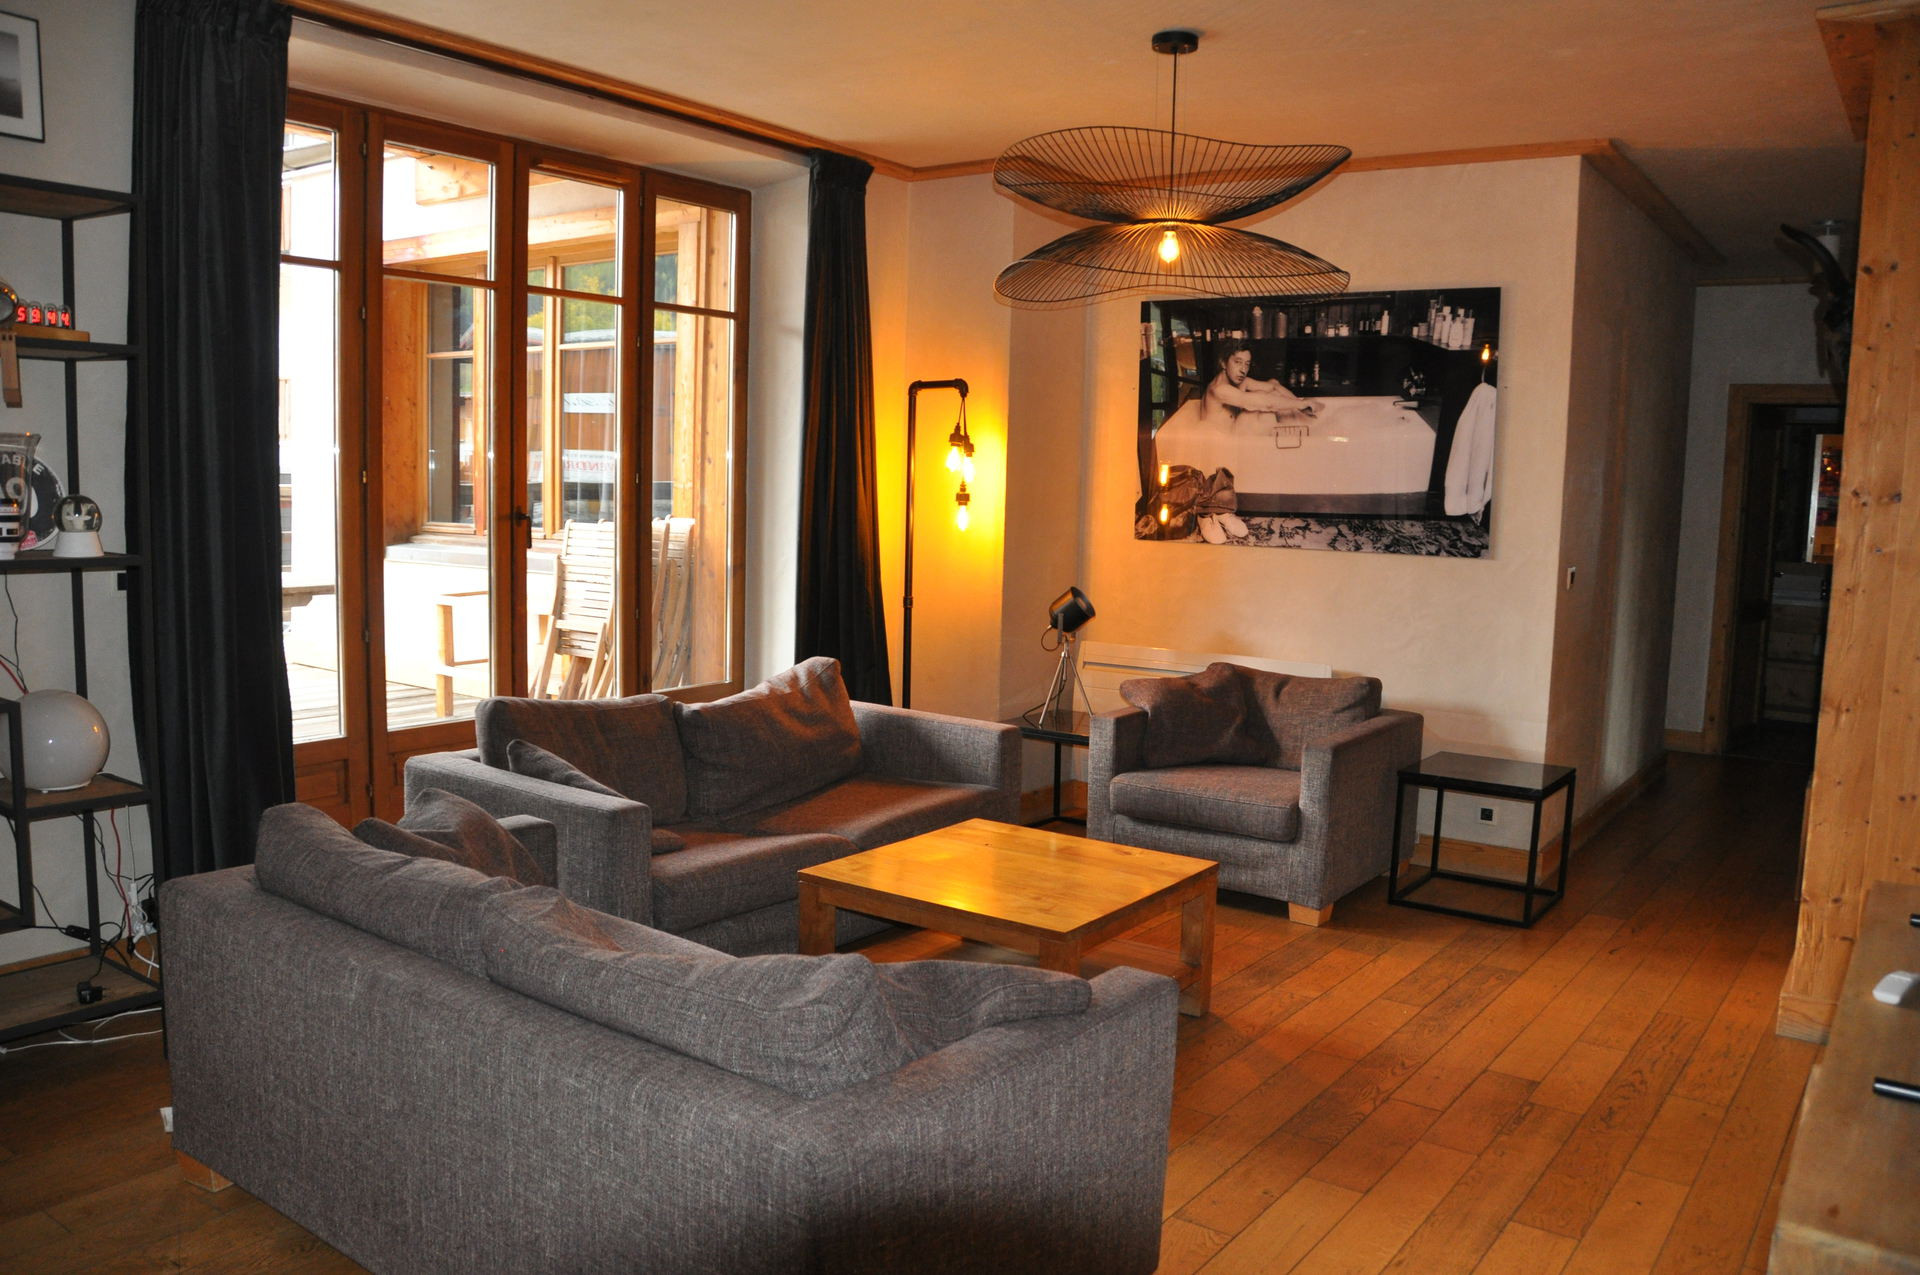 3 pièces 8 personnes - Appartement Cortina - 12 - Appt confort - 8 pers - Les Deux Alpes Venosc